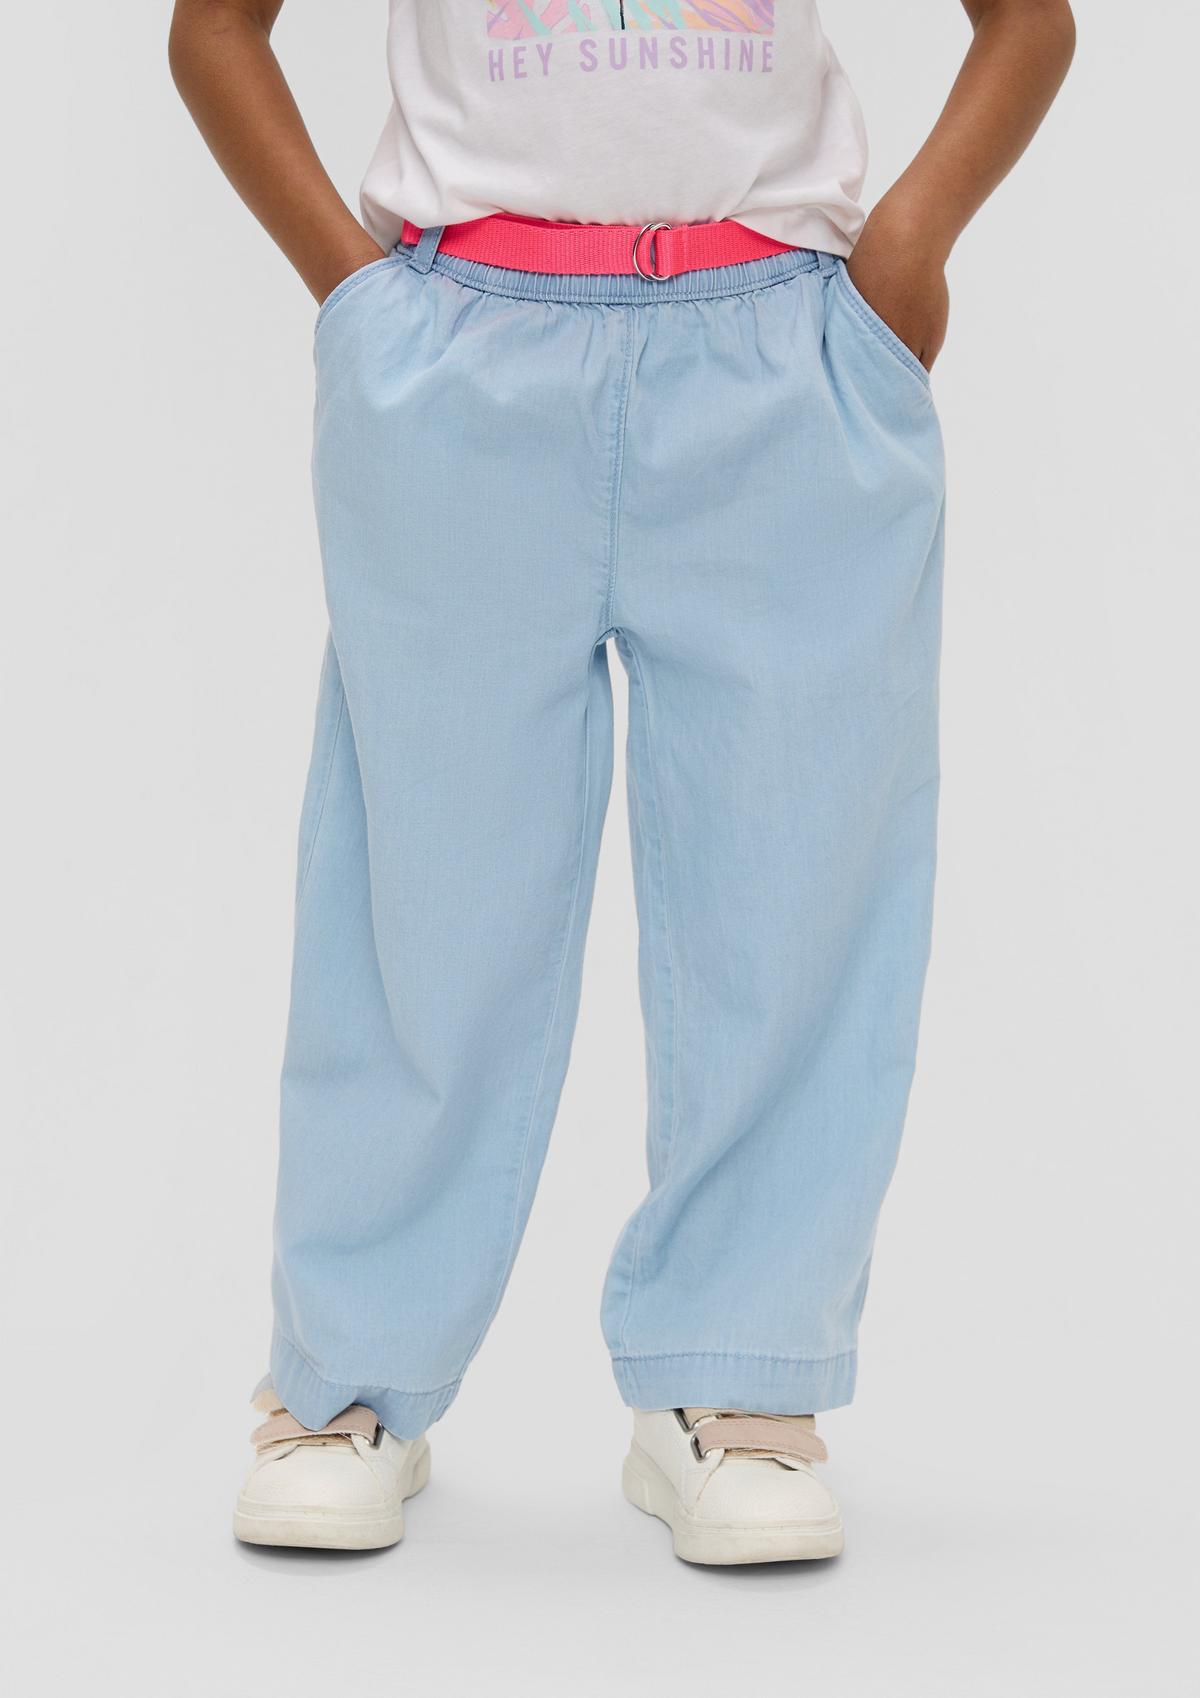 s.Oliver Jeans hlače Culotte / kroj Loose Fit / Mid Rise / široke hlačnice